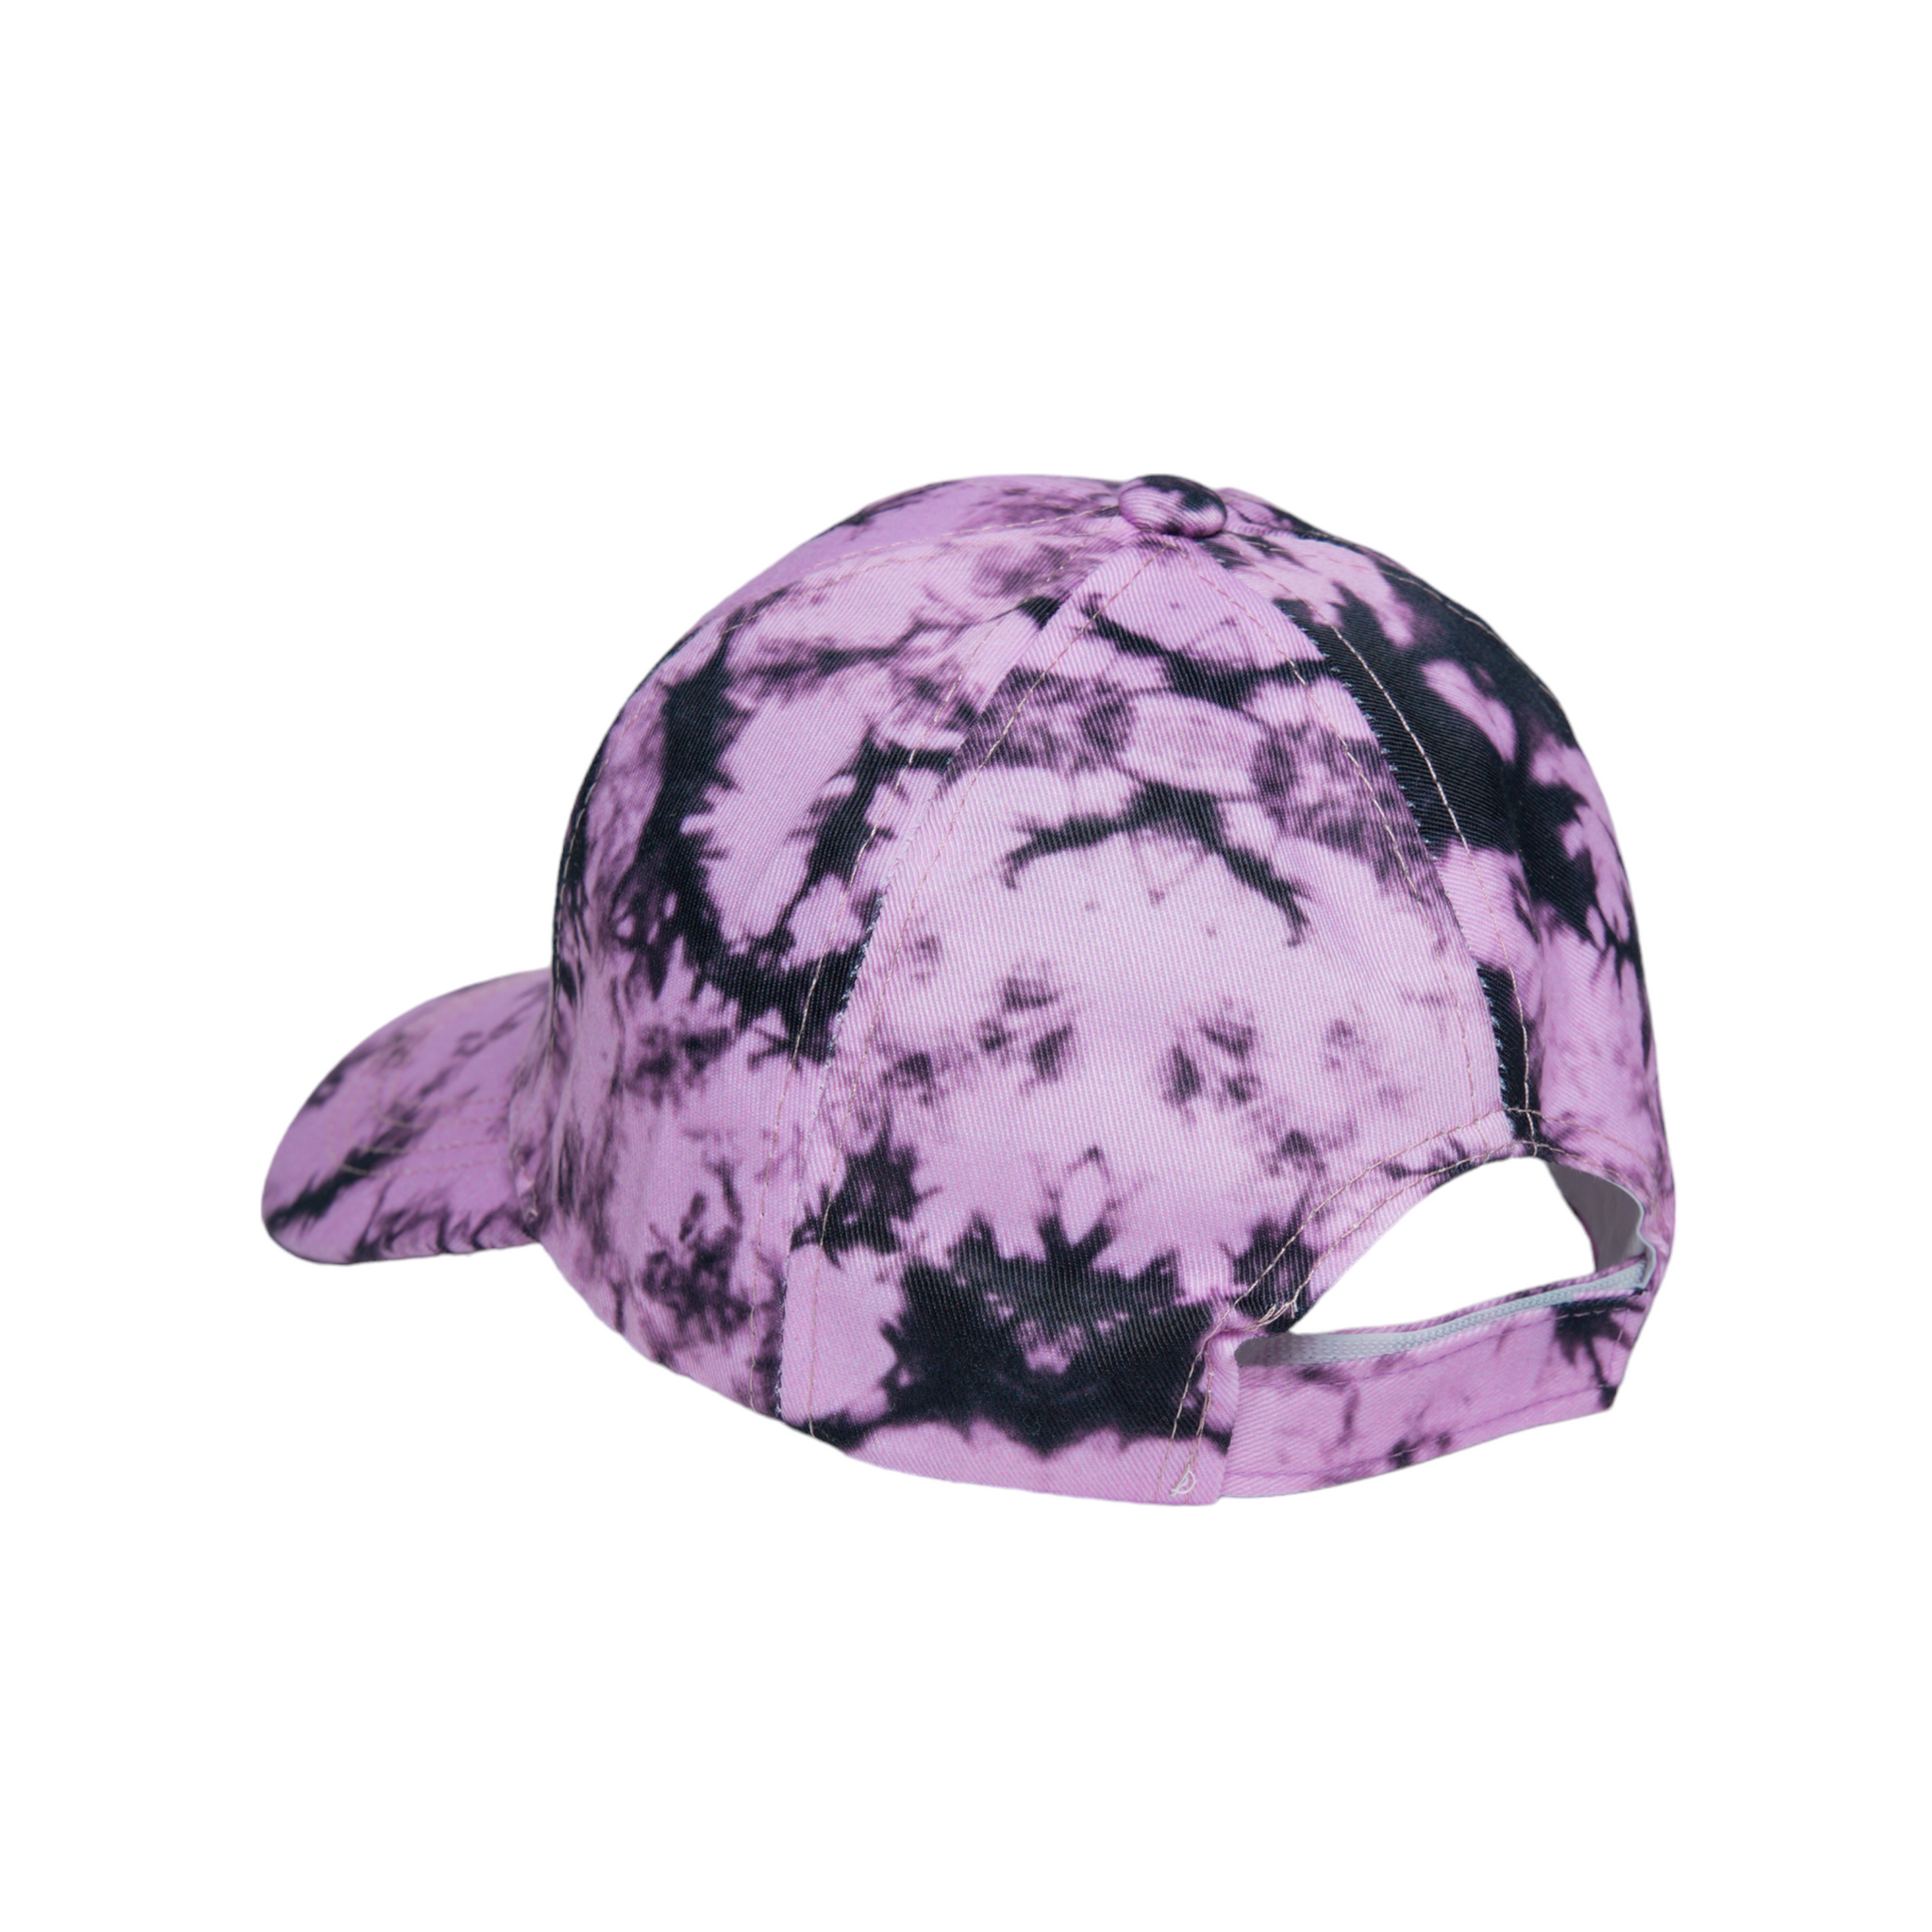 Chokore Tie-Dye Baseball Cap (Purple)